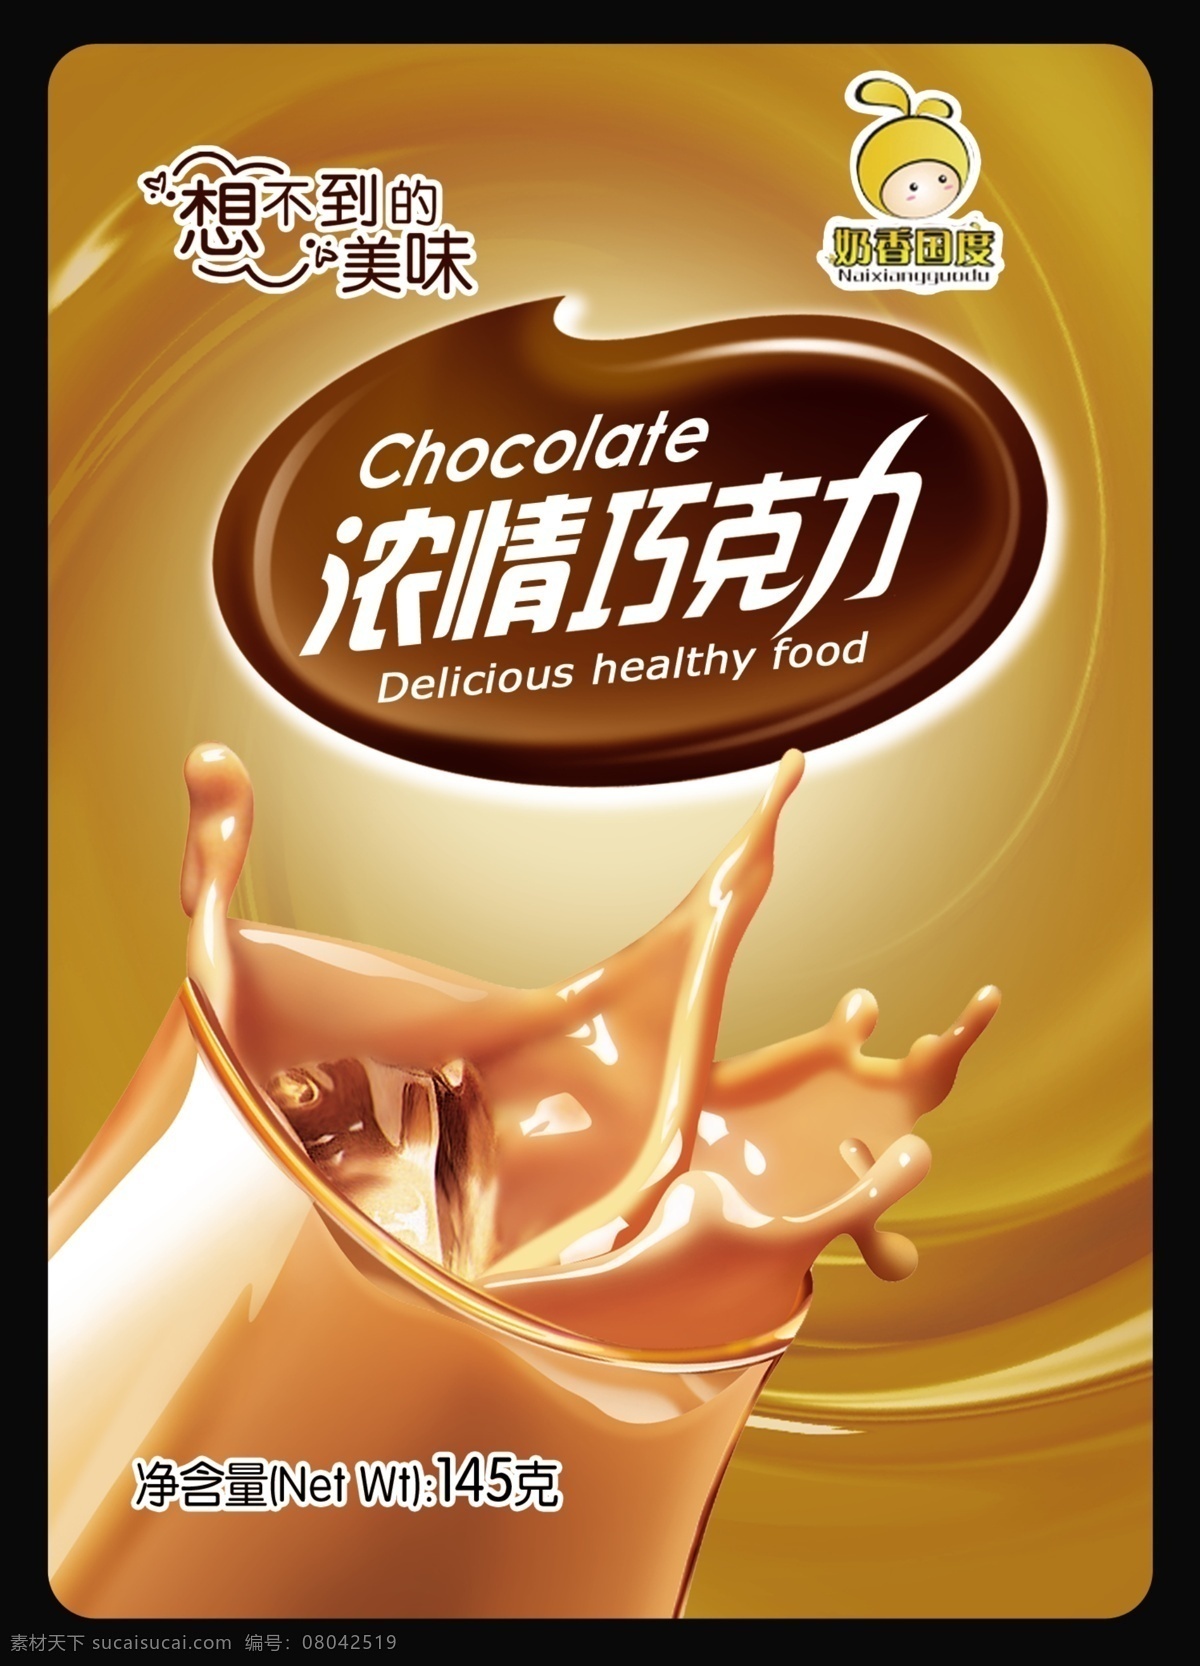 包装设计 广告设计模板 巧克力 巧克力包装 源文件 包装 模板下载 巧克力标志 浓情巧克力 logo psd源文件